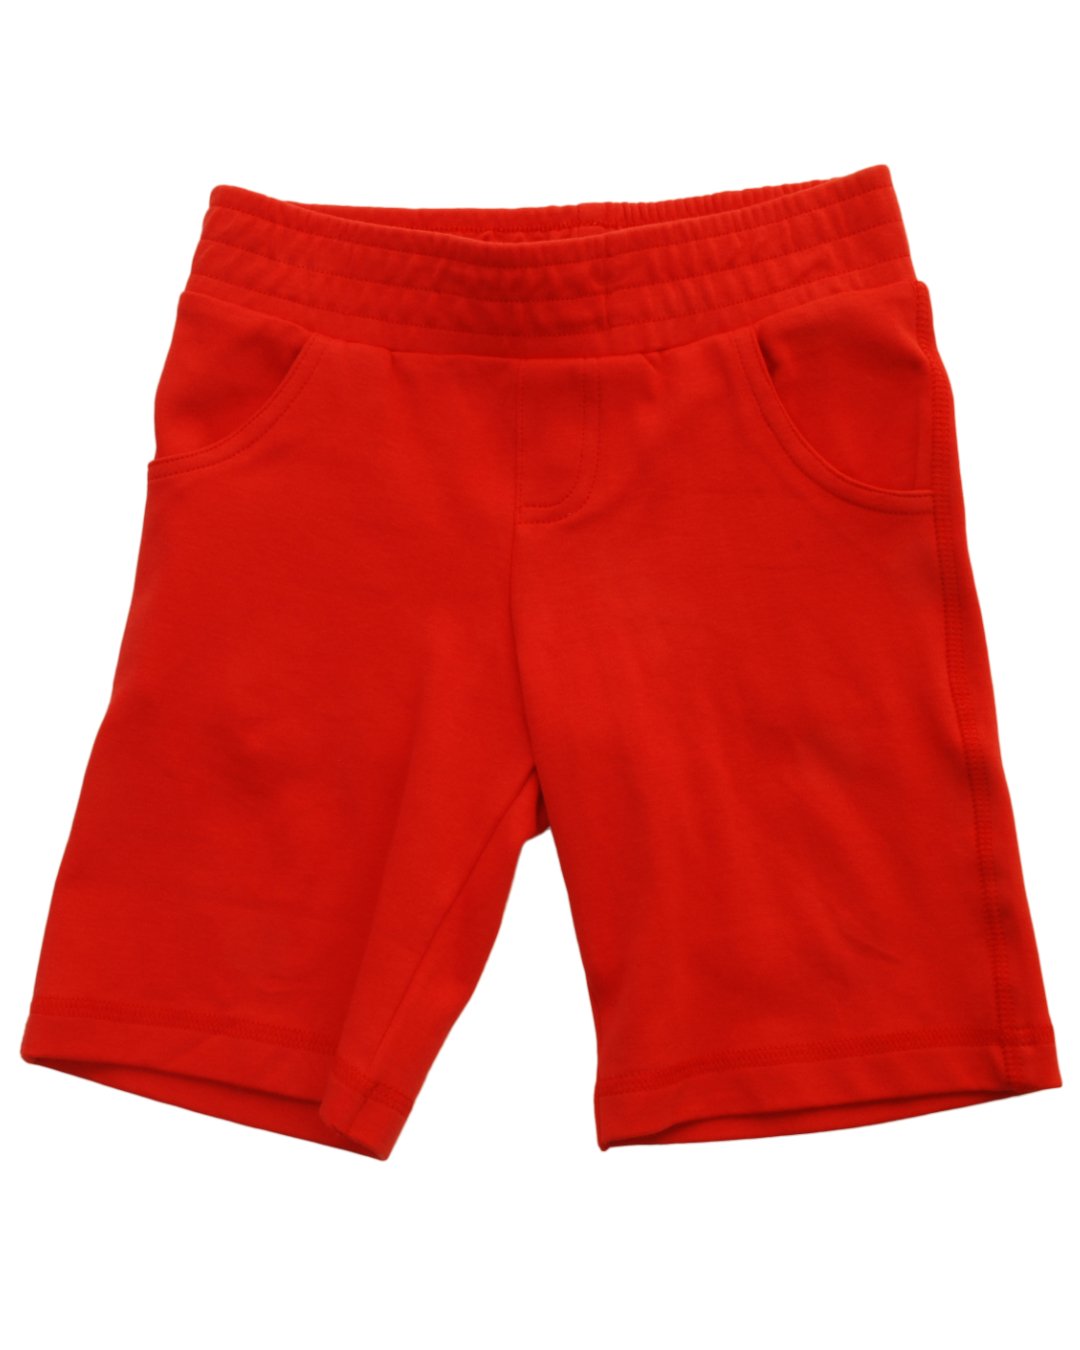 Rote Shorts für Kinder aus Biobaumwolle von DUNS Sweden